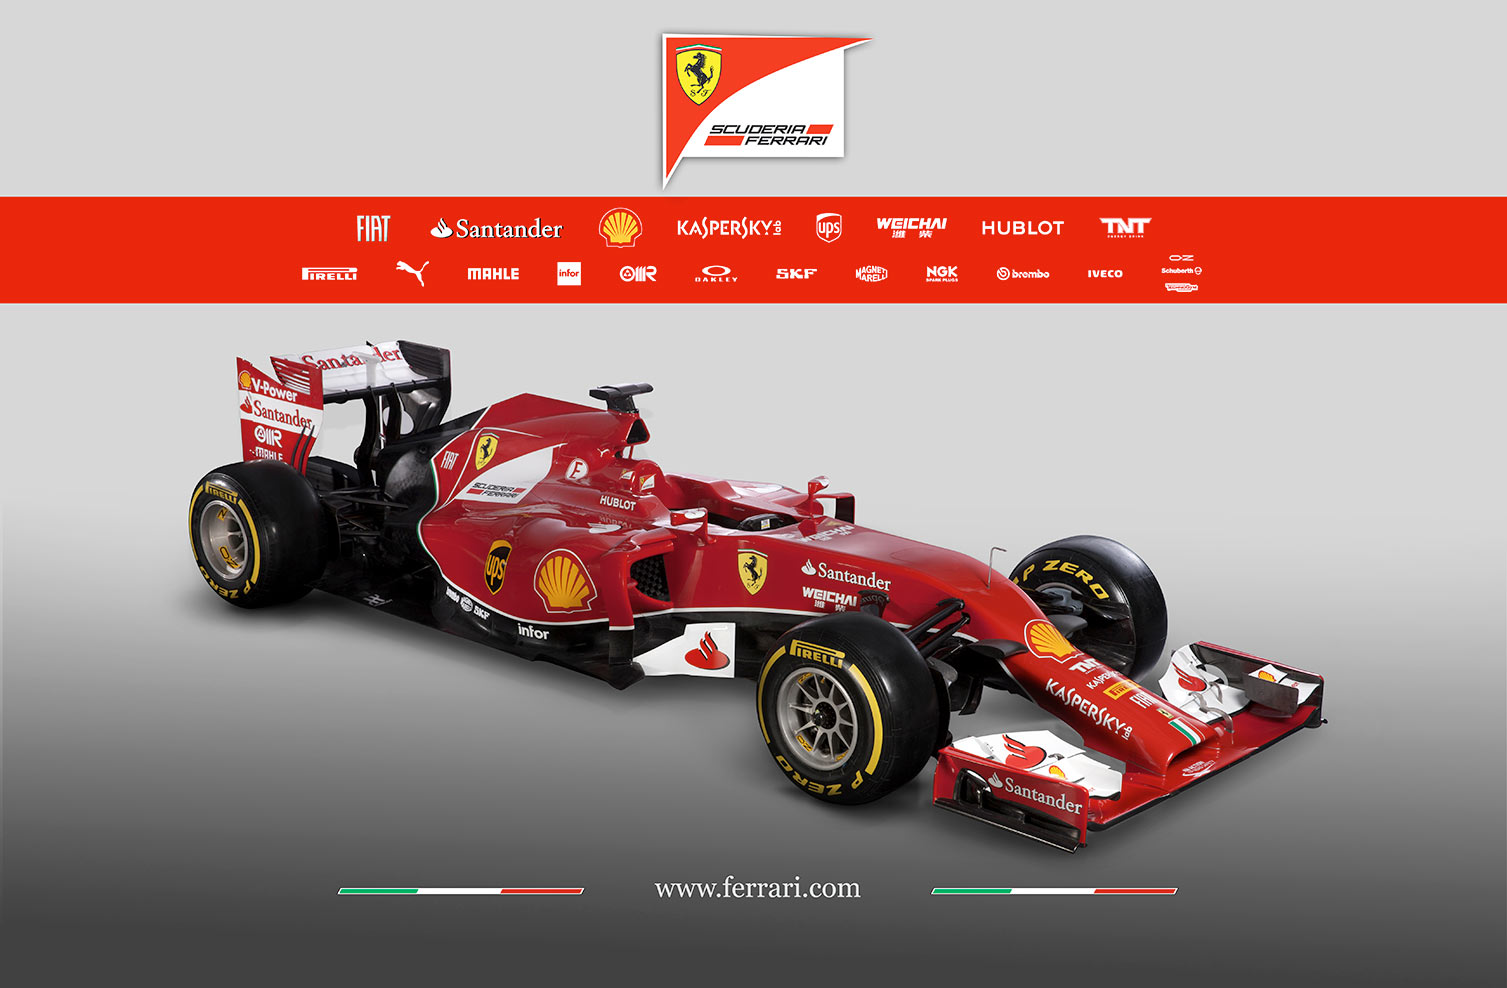 Un'immagine diffusa da Ferrari della nuova F14-T